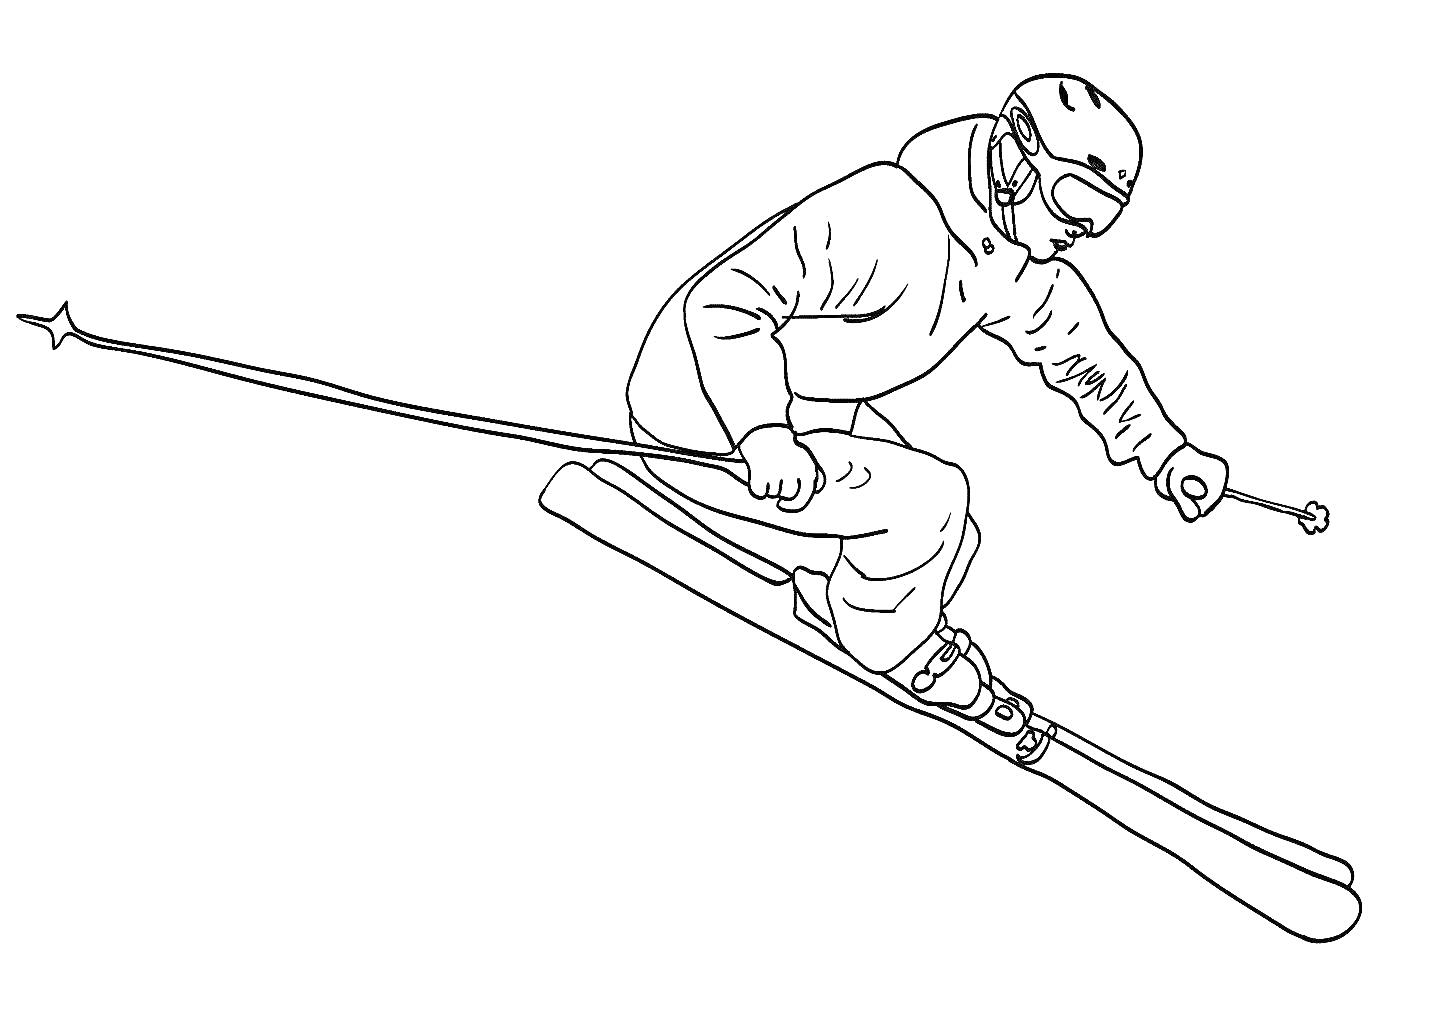 Раскраска Горнолыжник в прыжке с палками, в шлеме и защитных очках